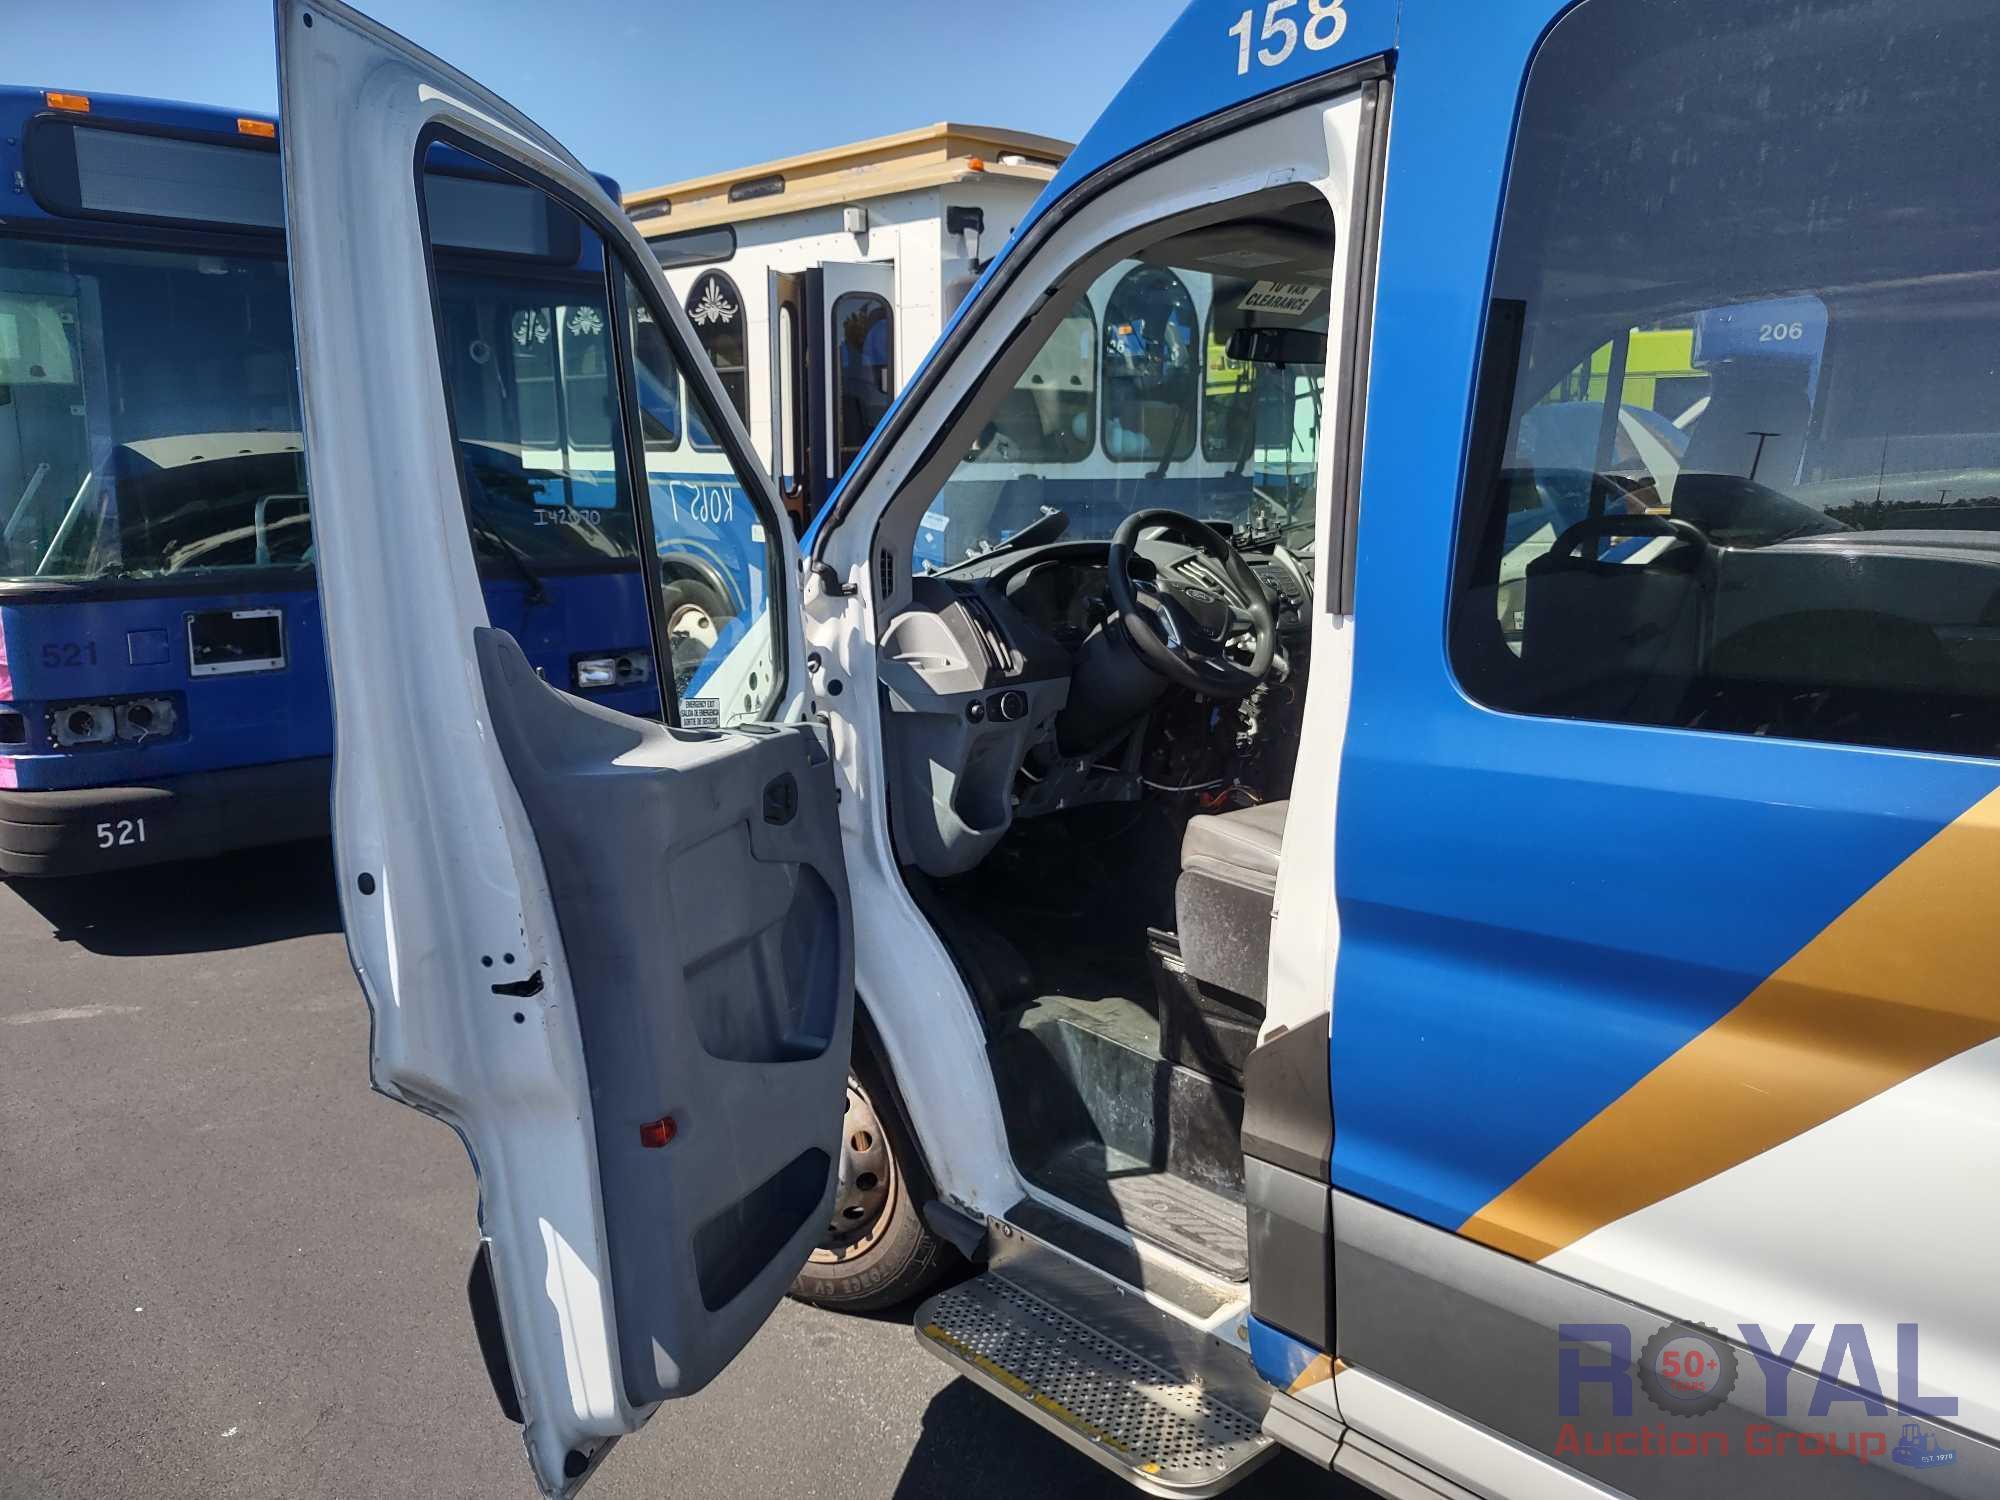 2017 Ford Transit Wagon Passenger Van